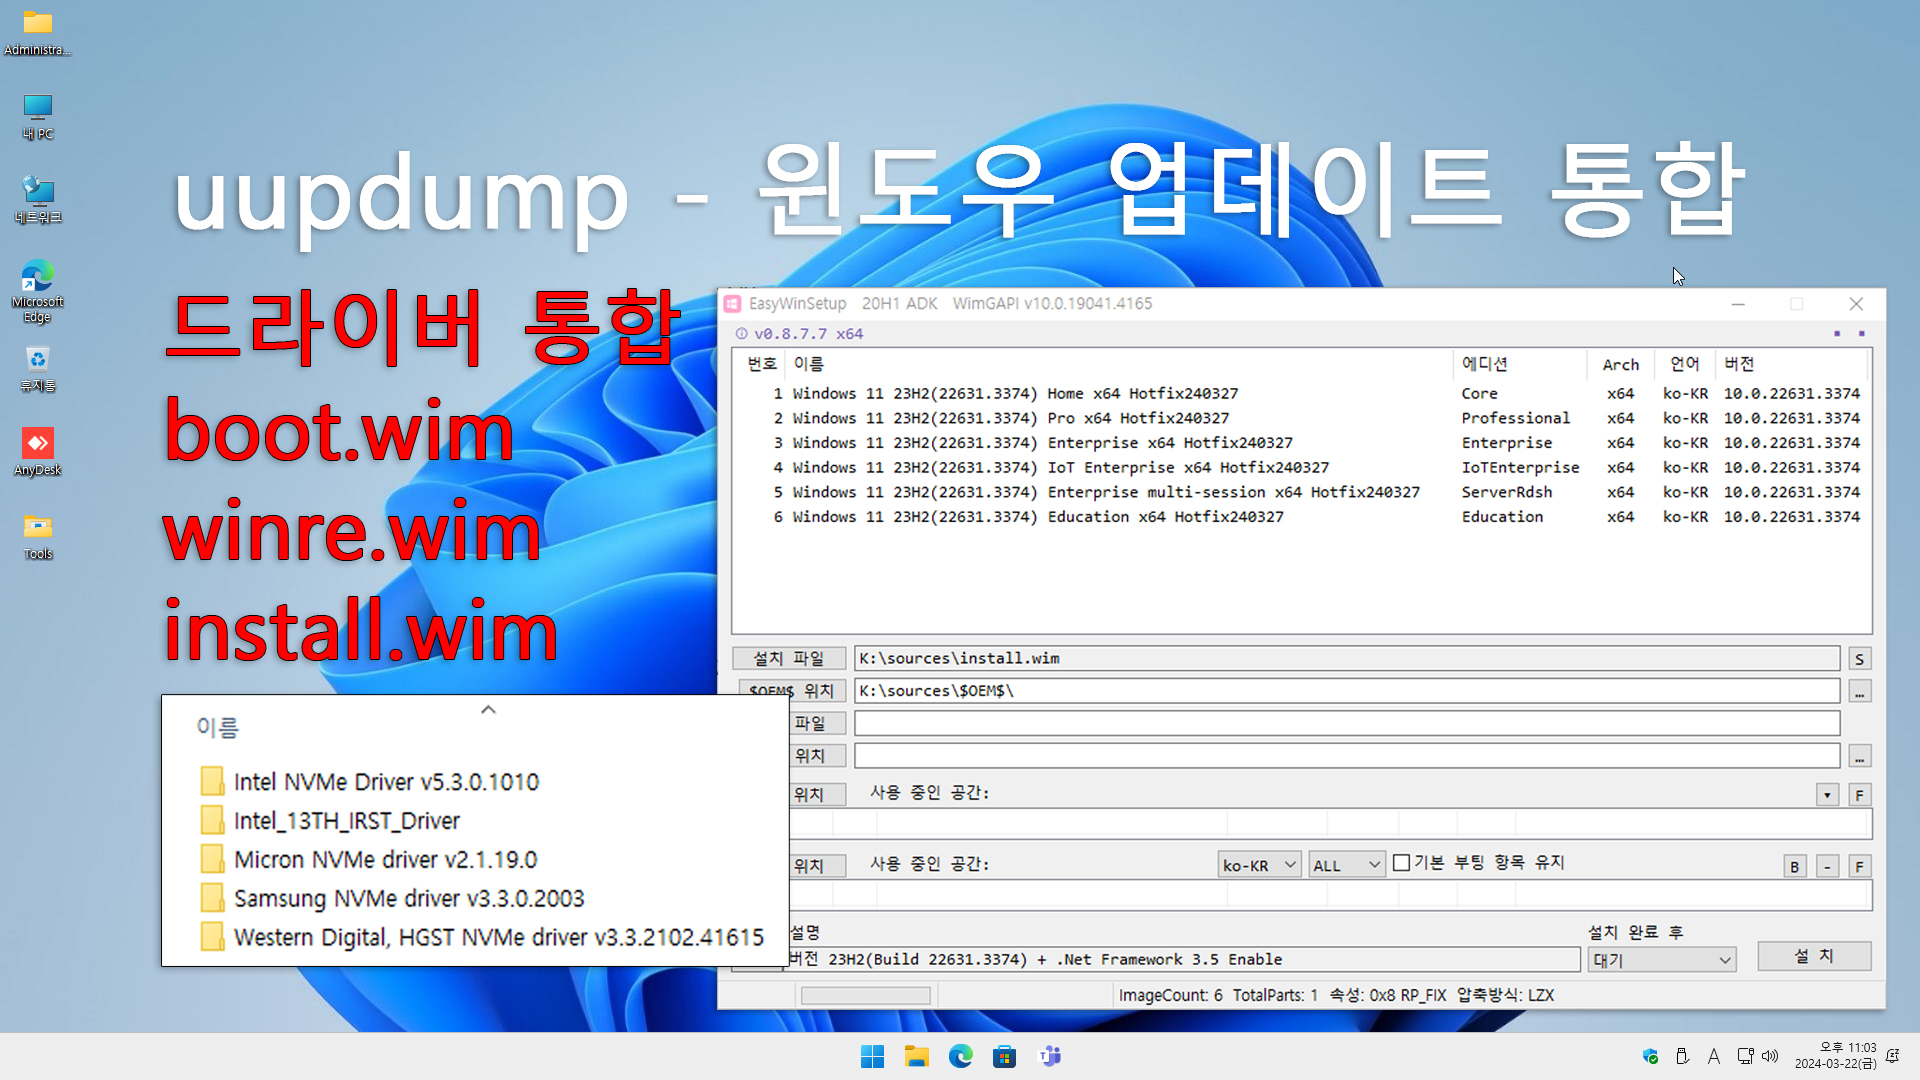 uupdump 업데이트 드라이버 통합 ISO 생성 - boot.wim, winre.wim 빌드 번호 수정 copy.jpg